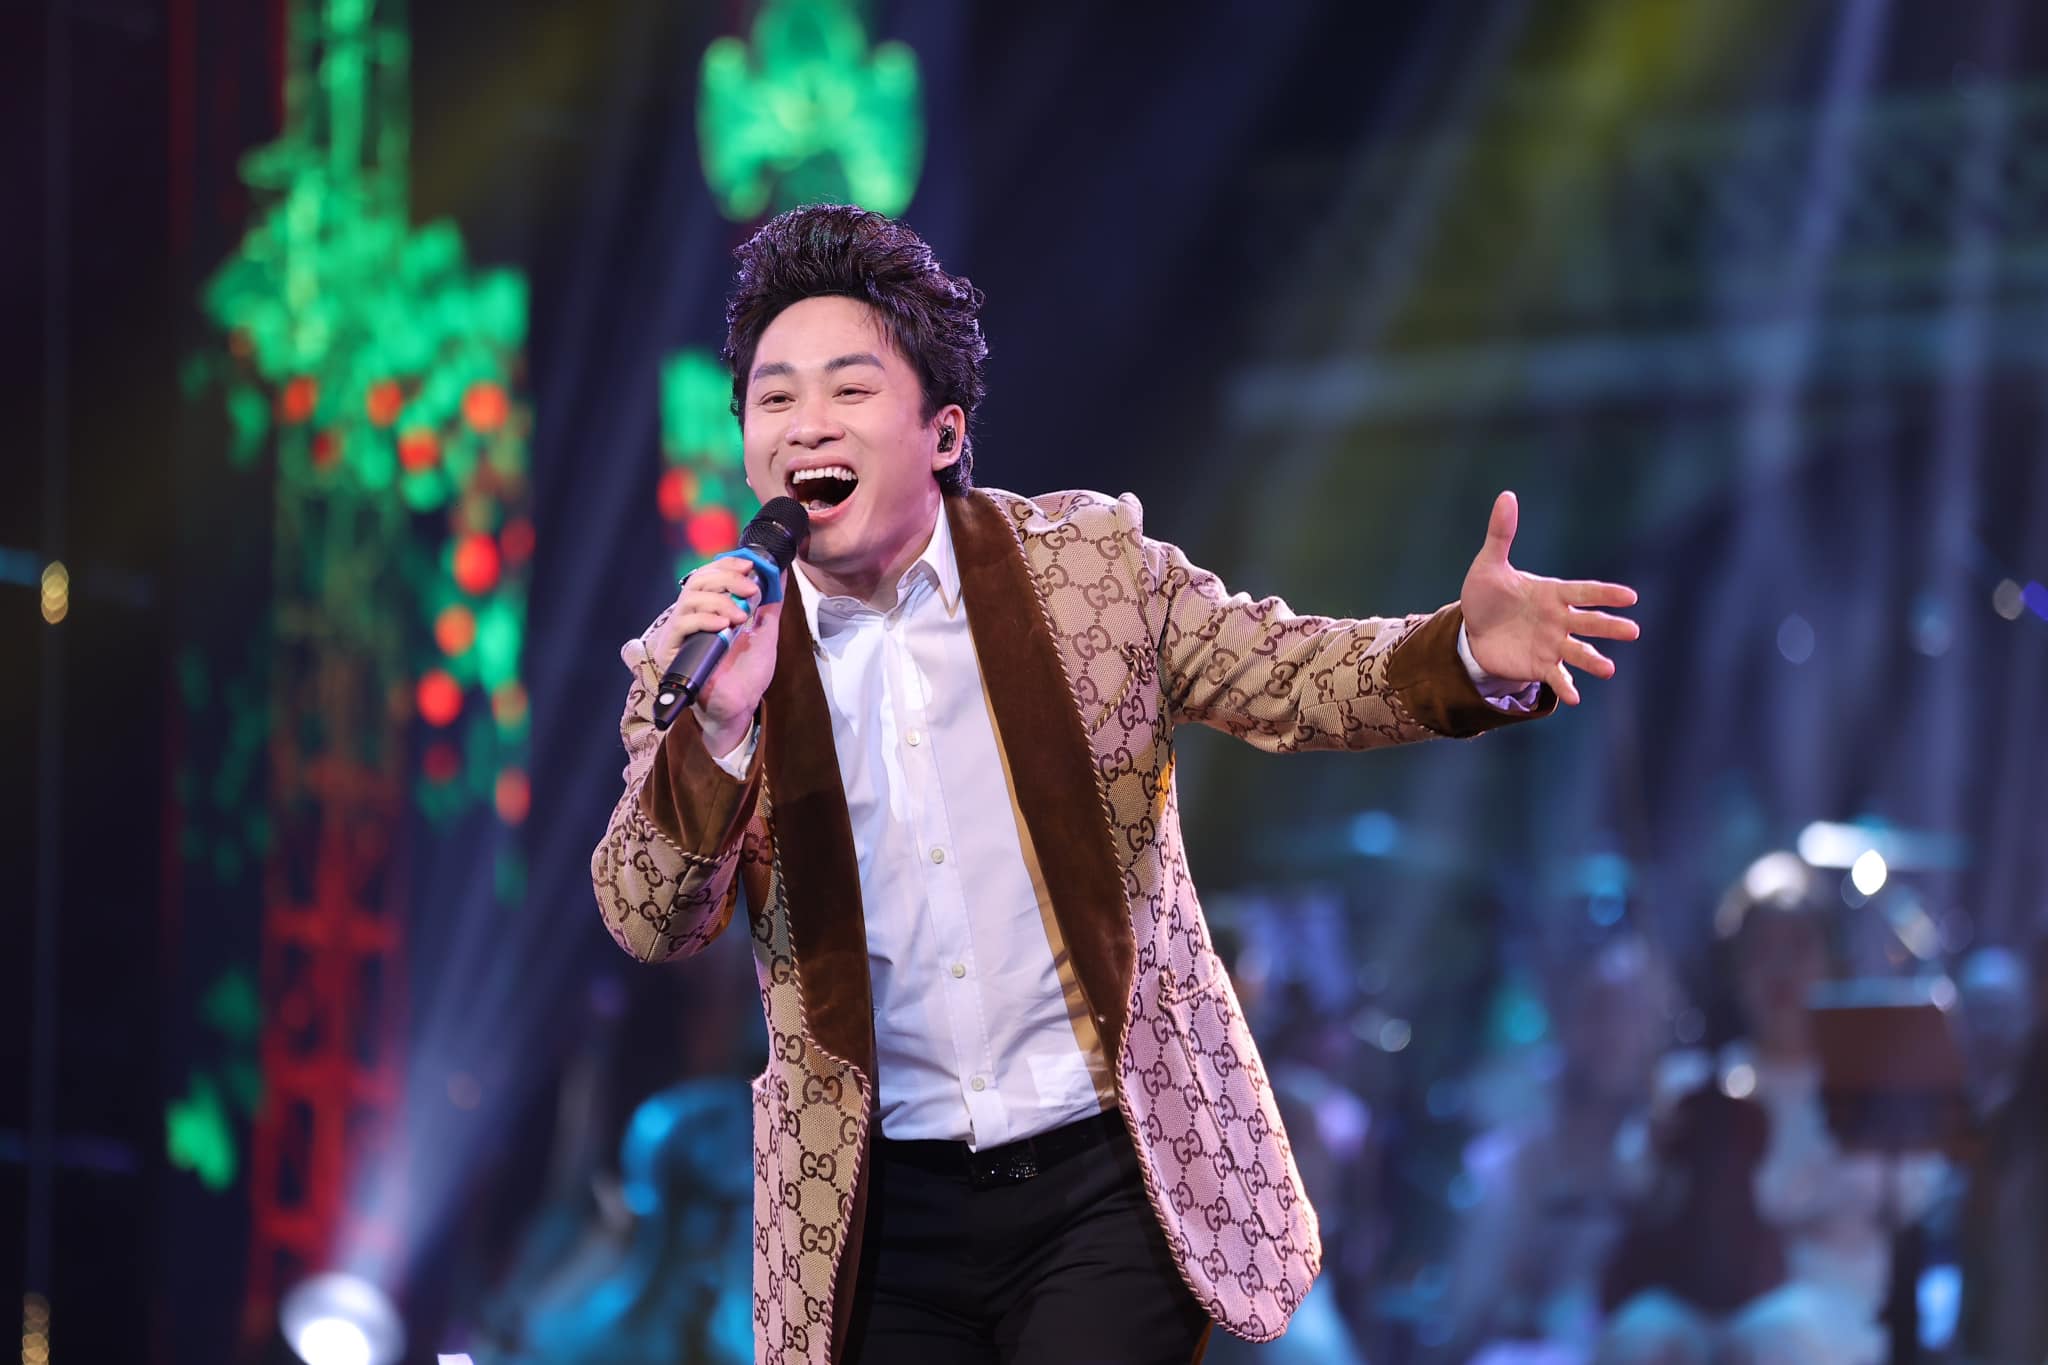 Nỗi sợ phía sau thành công của những ca sĩ 'có giọng' ở nhạc Việt: Trở thành 'thợ hát', 'máy hát' - 4